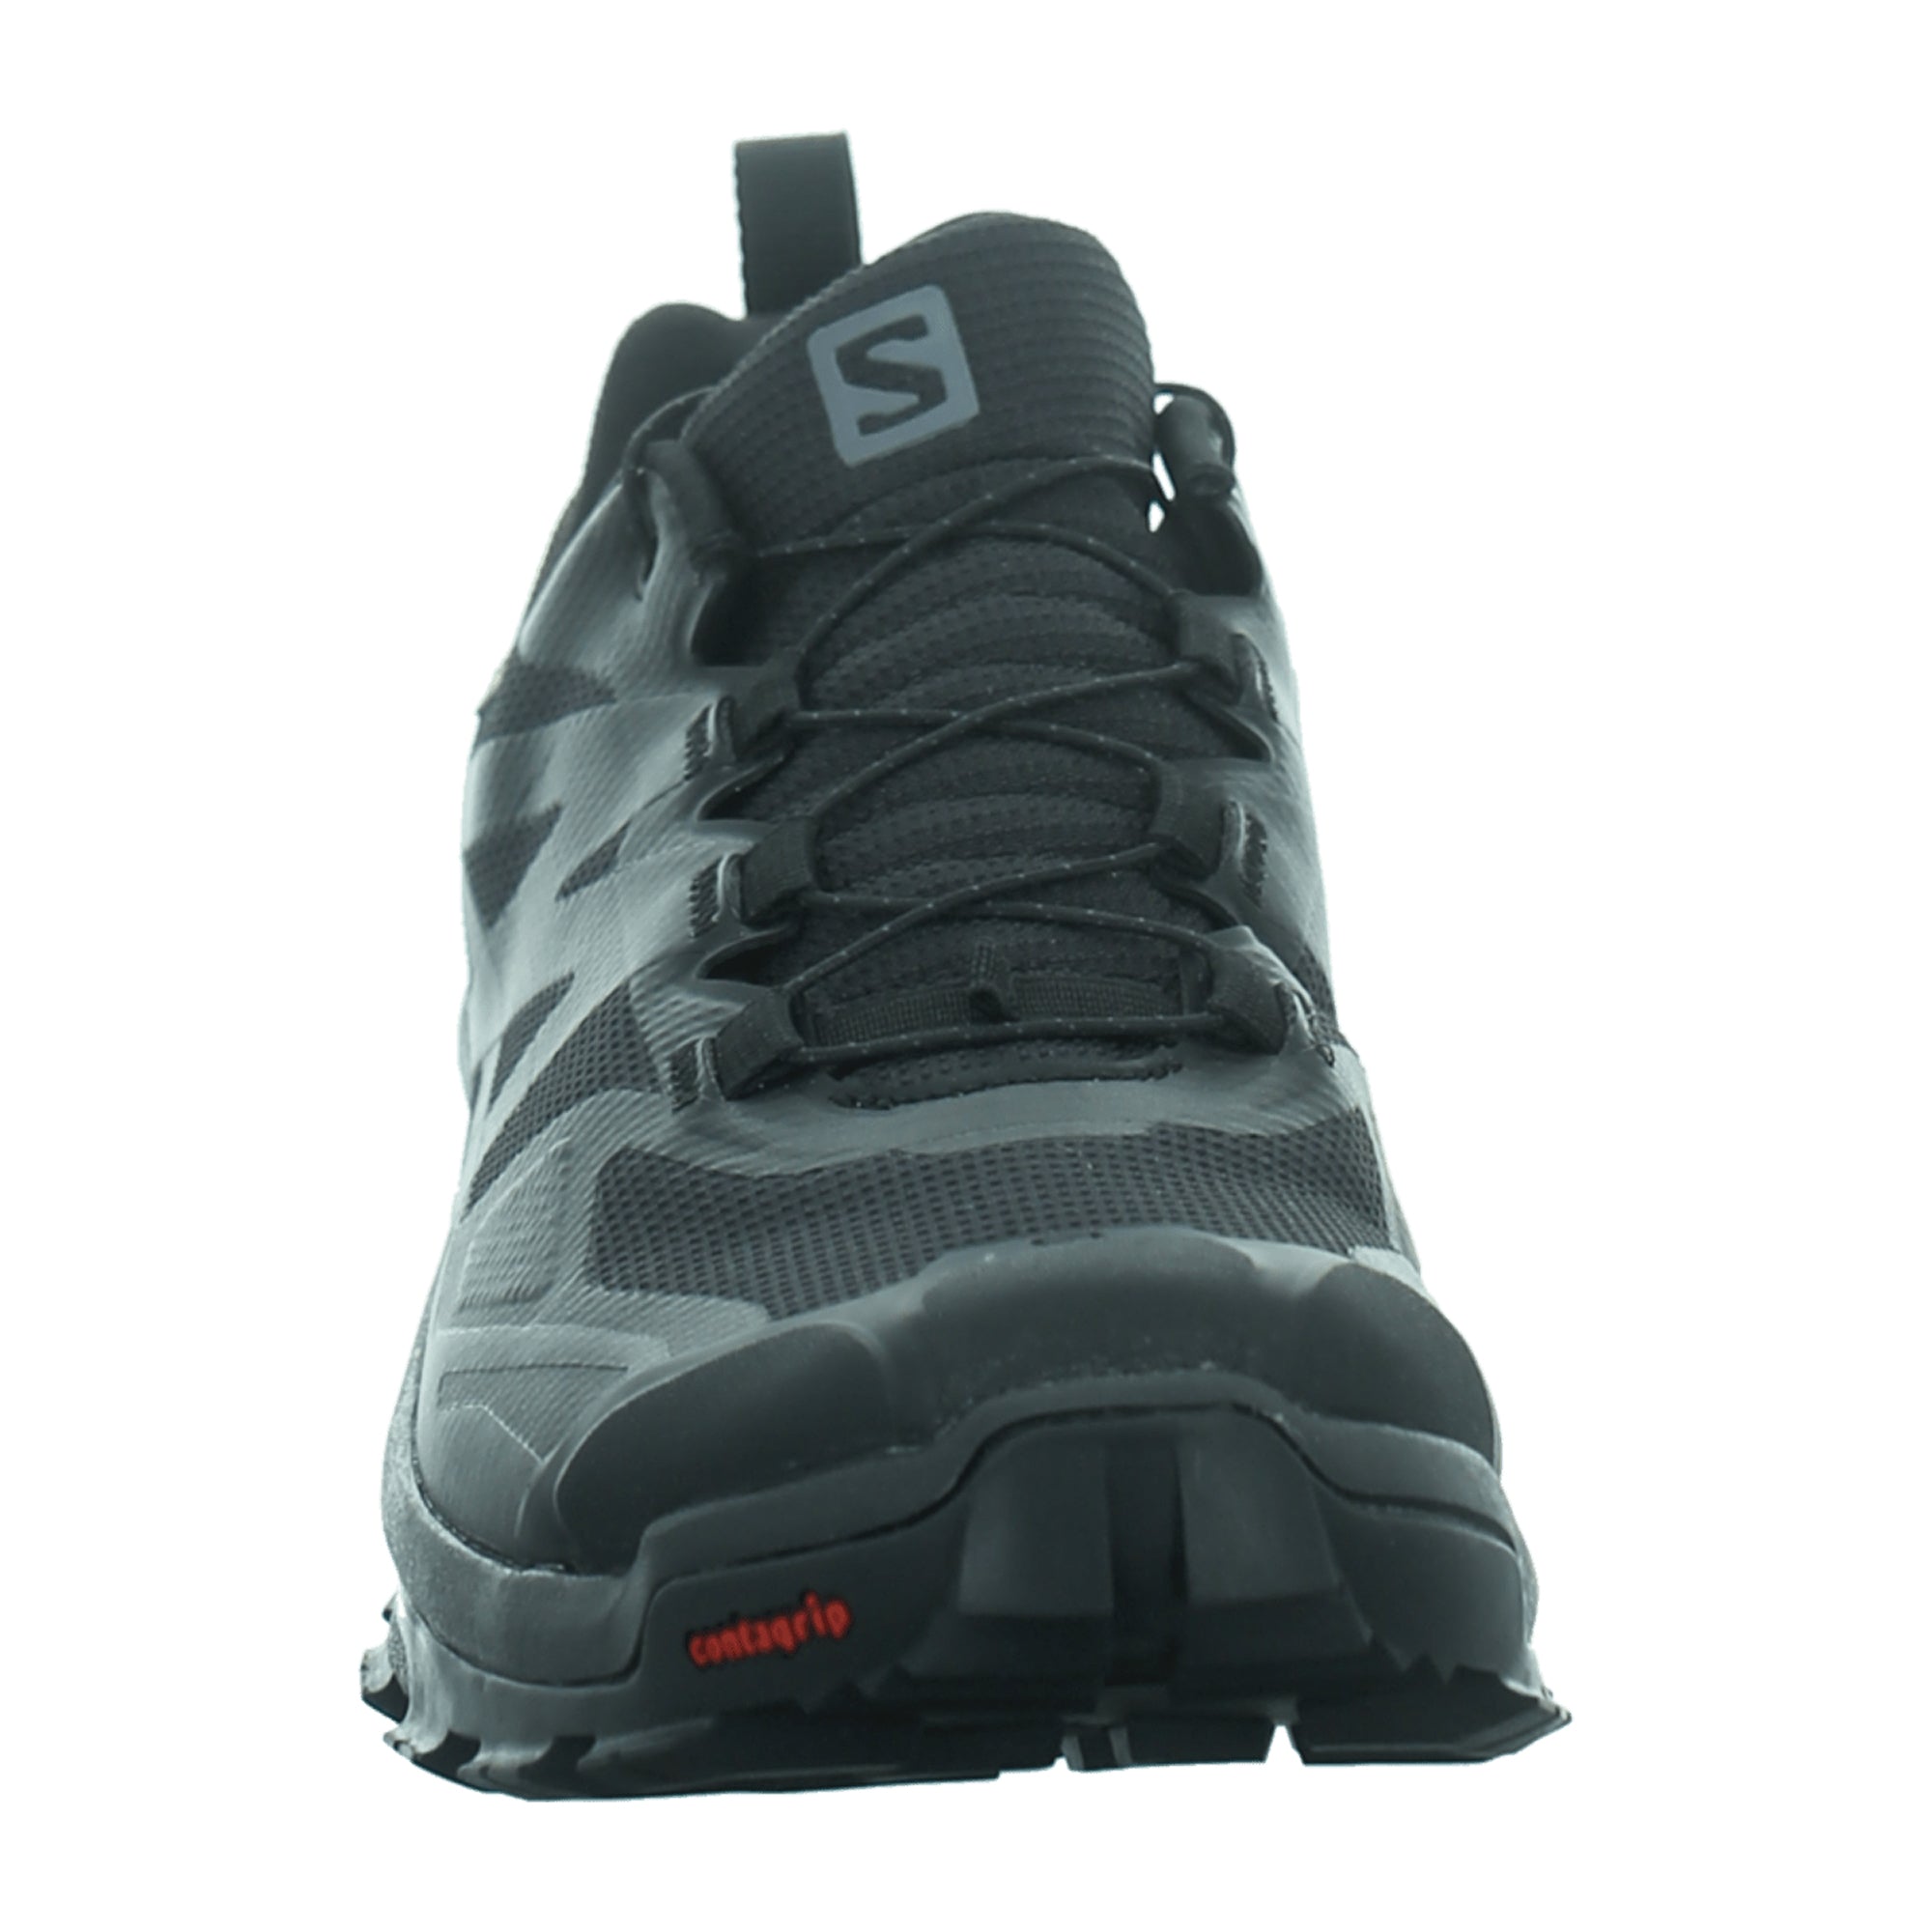 Salomon XA Rogg 2 GTX for women, black, shoes